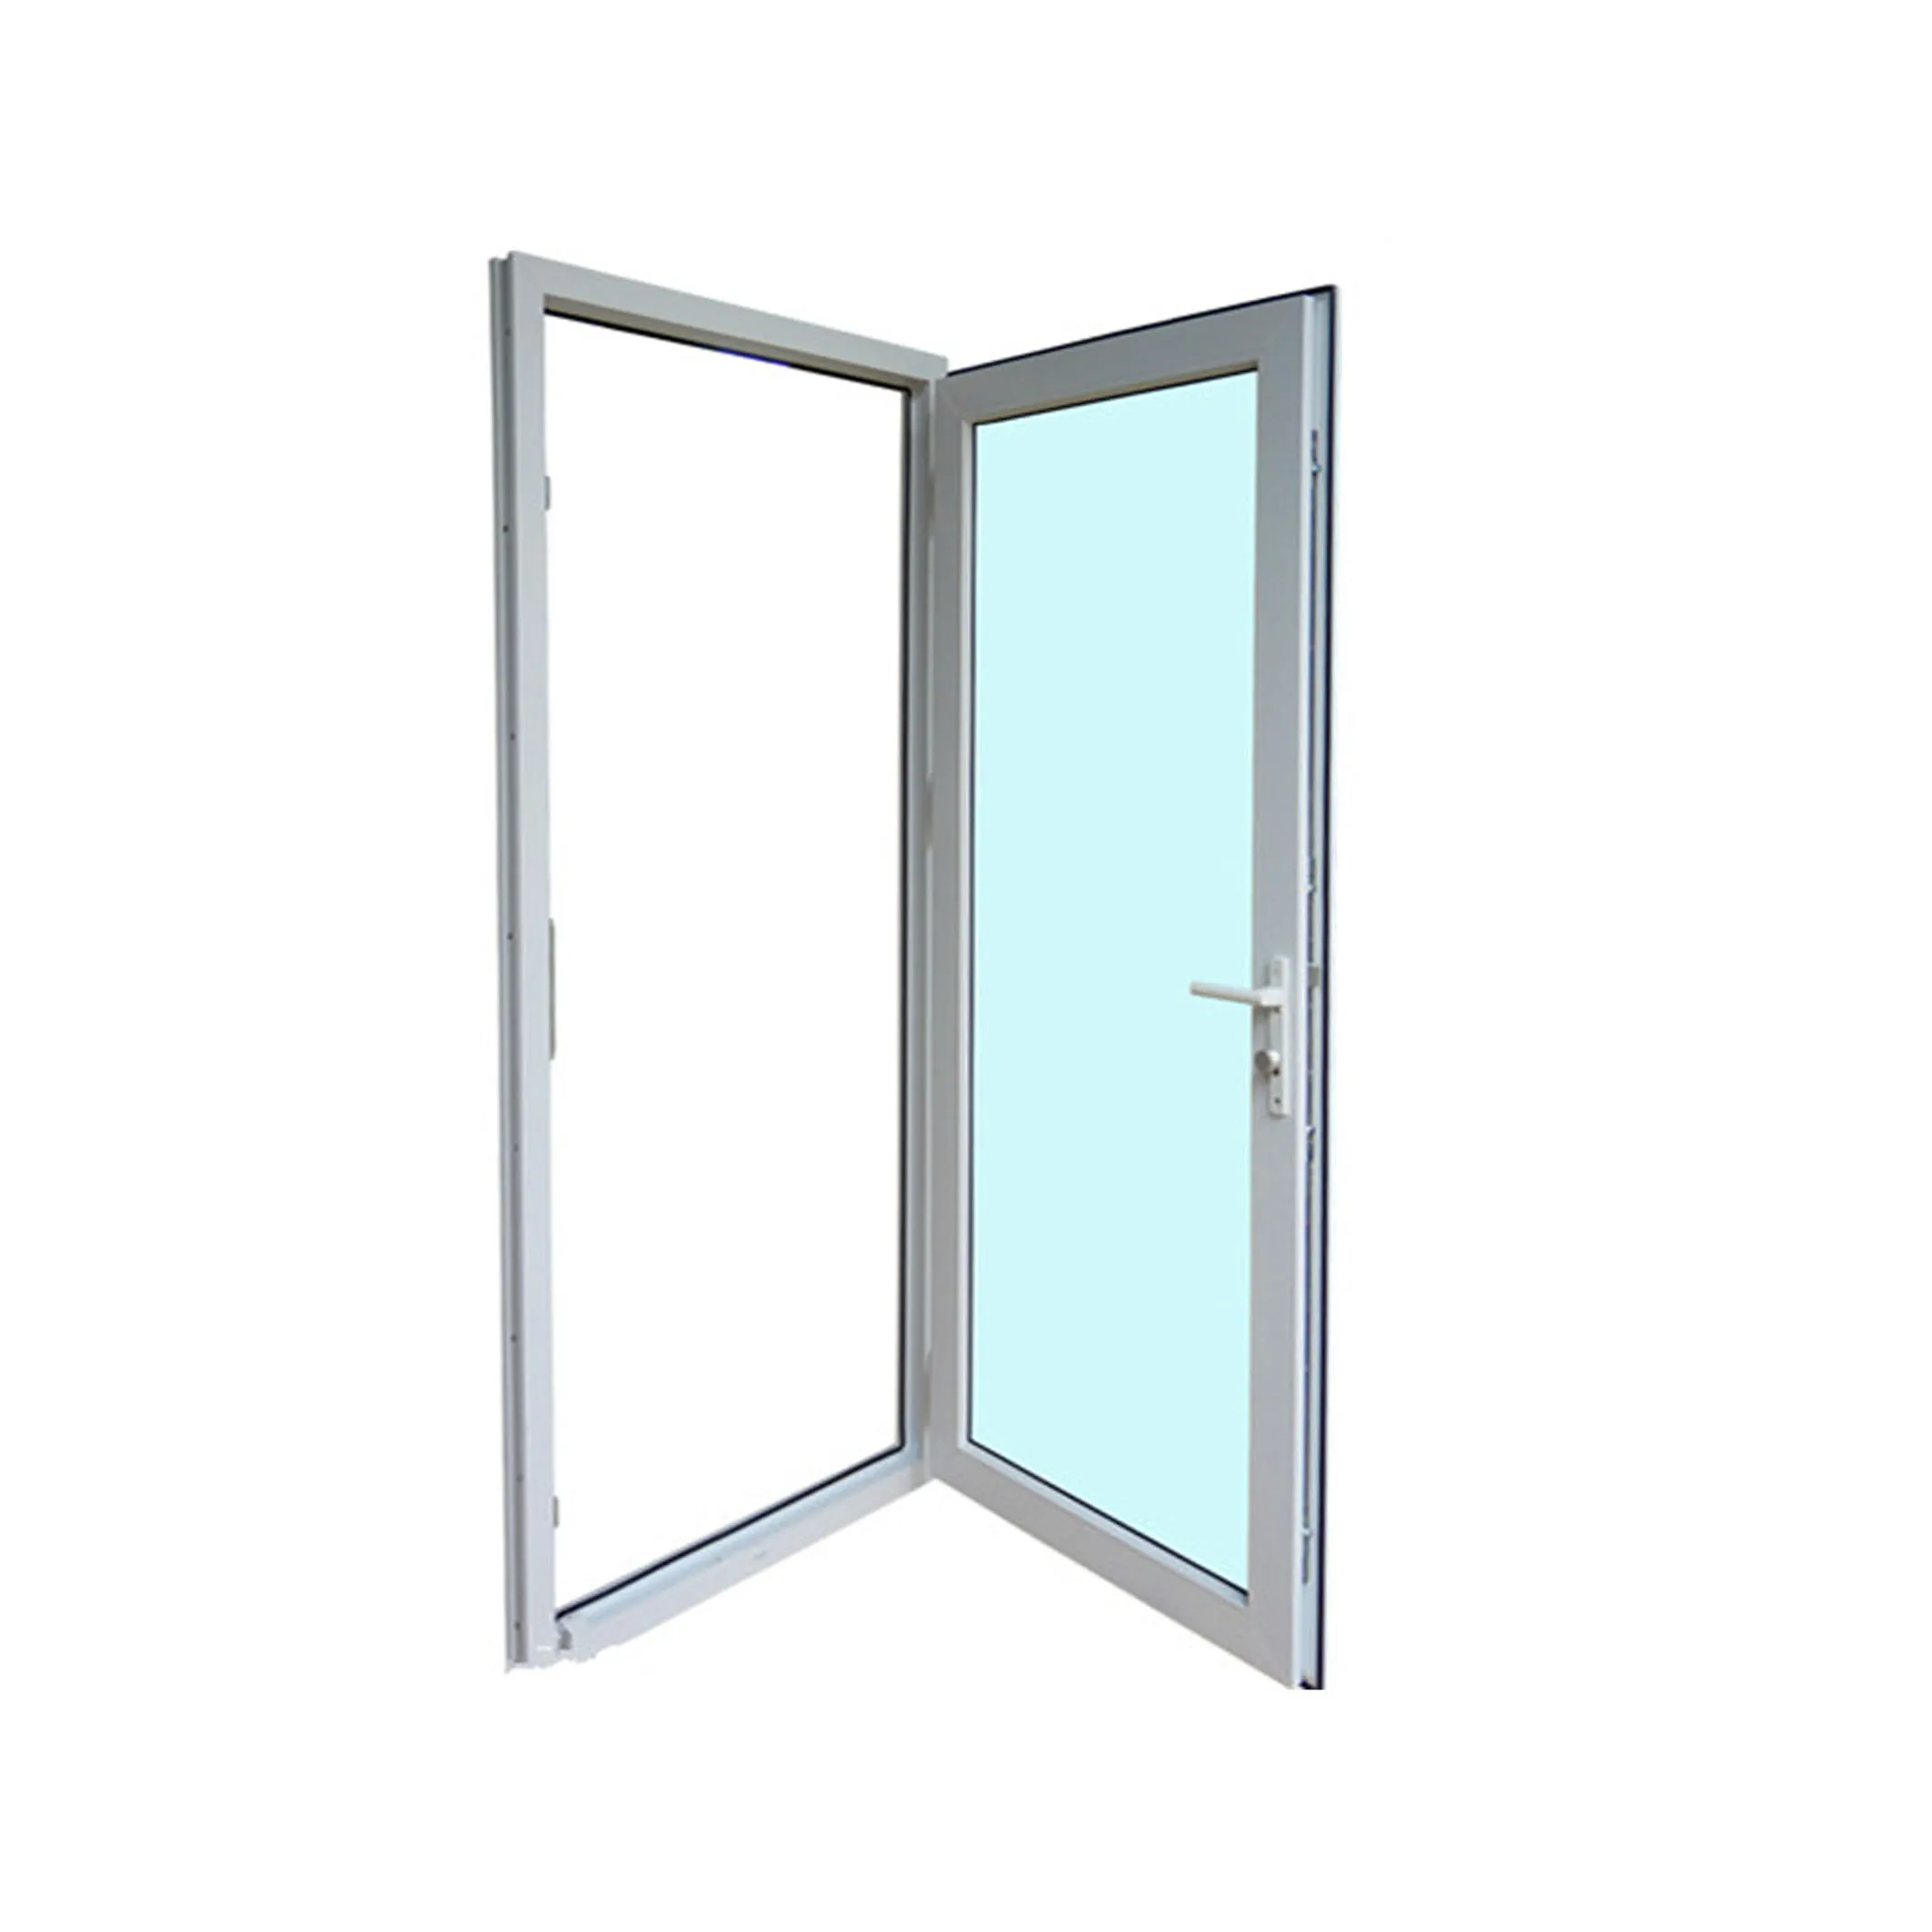 Hot Sale Casement Home Panel Wood Outdoor Blinds New Design Pvc Door